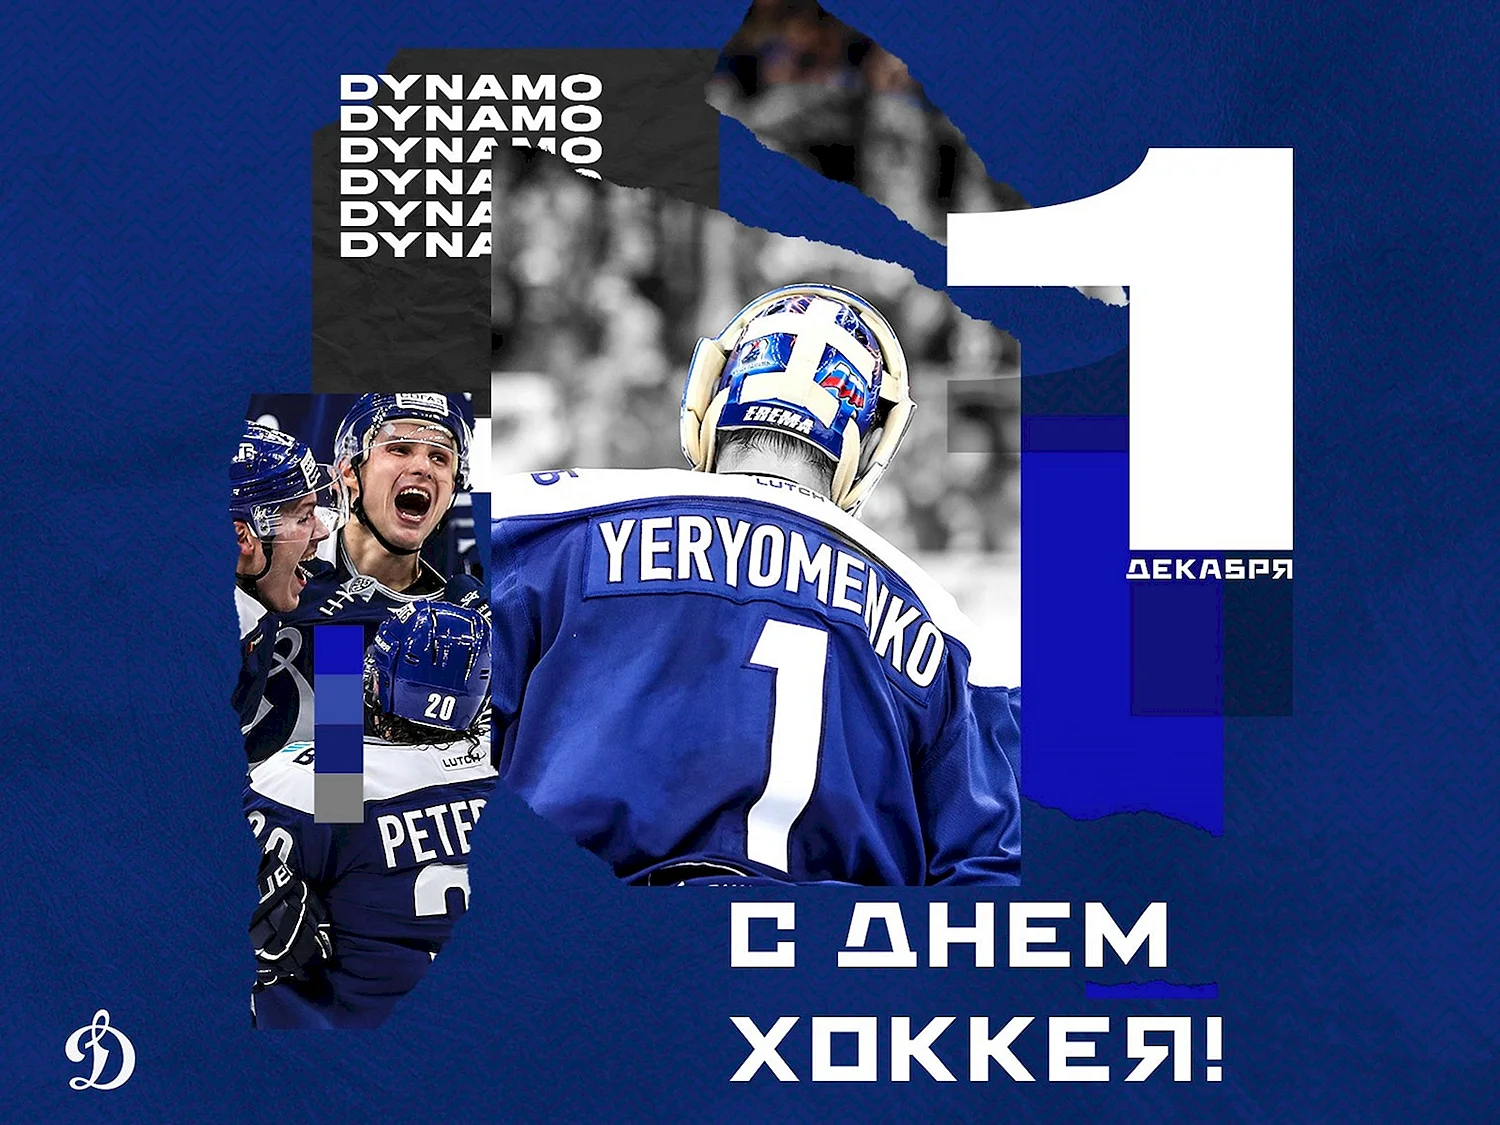 Всероссийский день хоккея